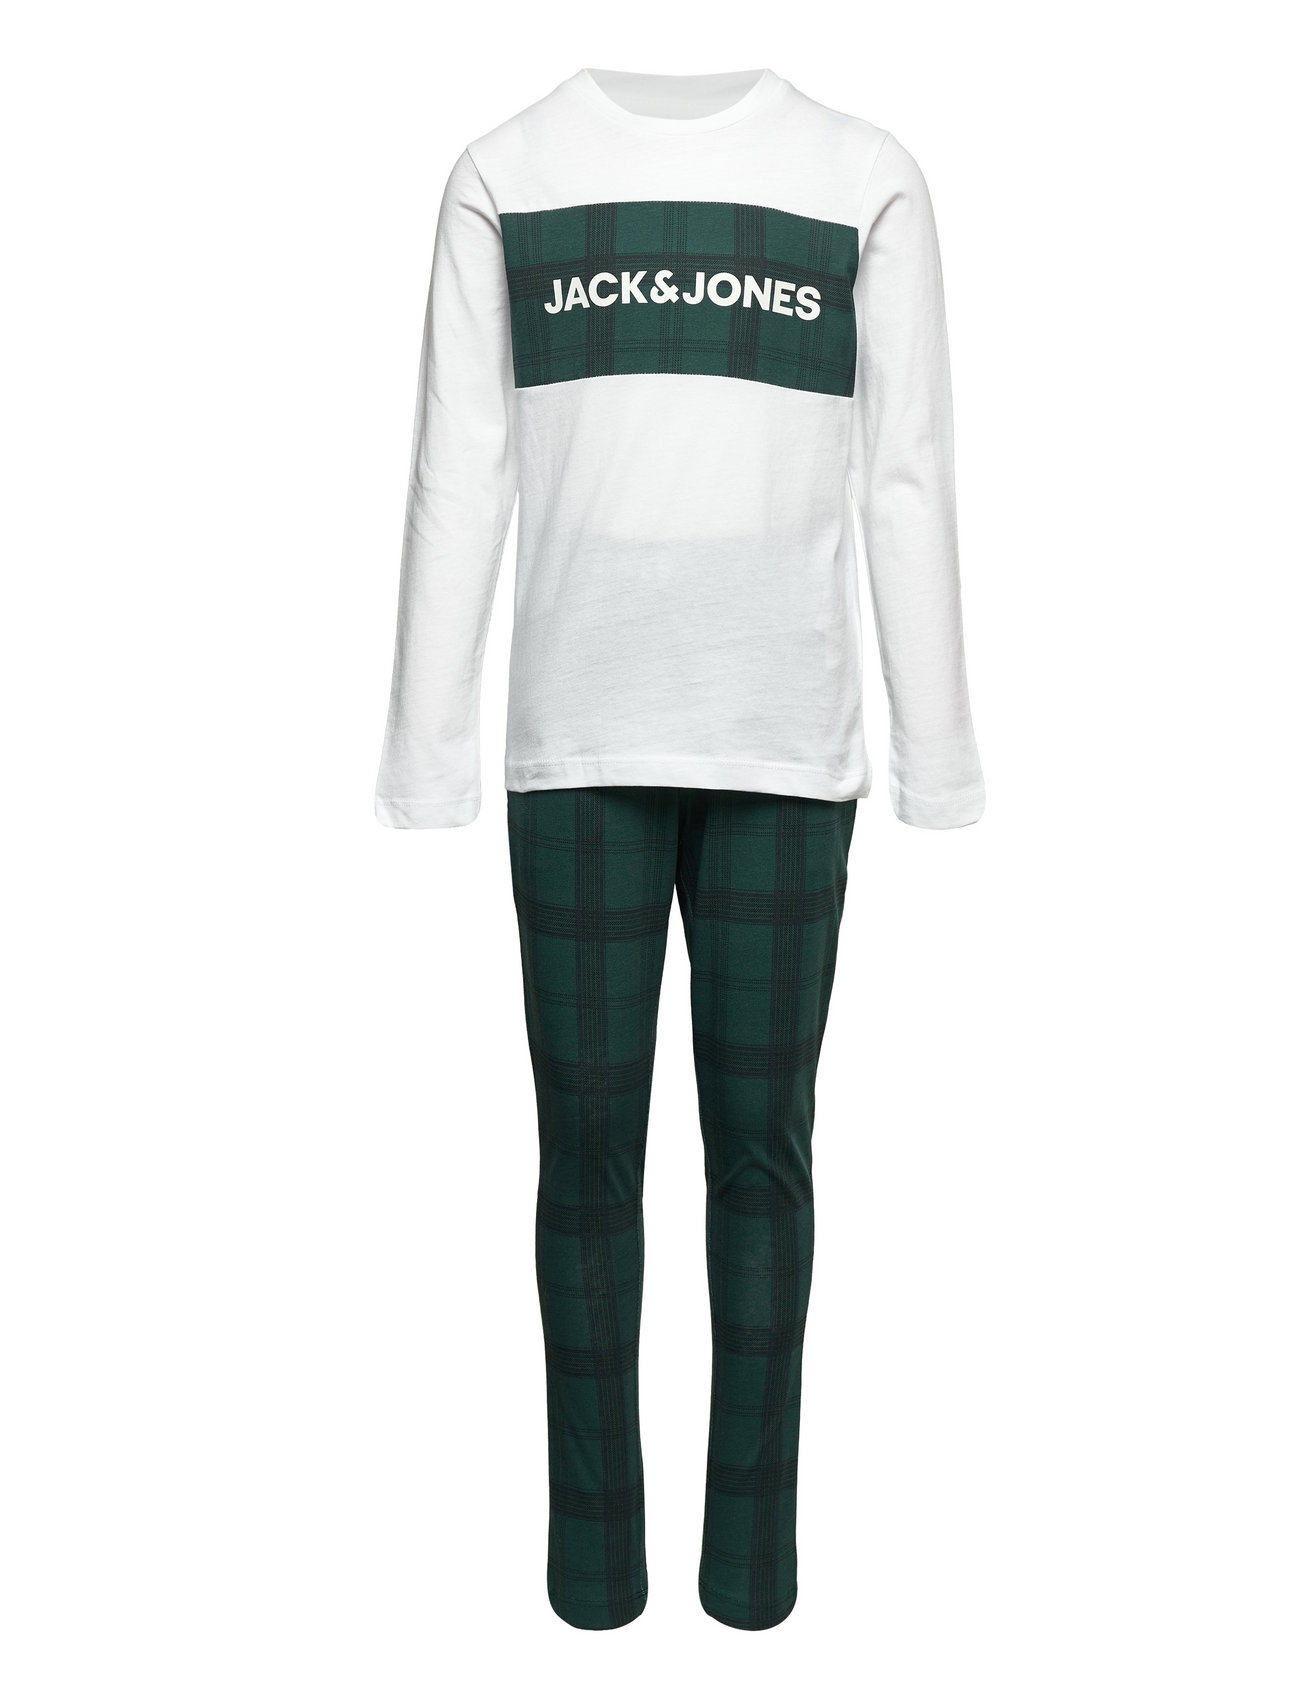 Jactrain Lw Pants And Ls Tee Jnr New Pyjamas Set Multi/mönstrad Jack & J S